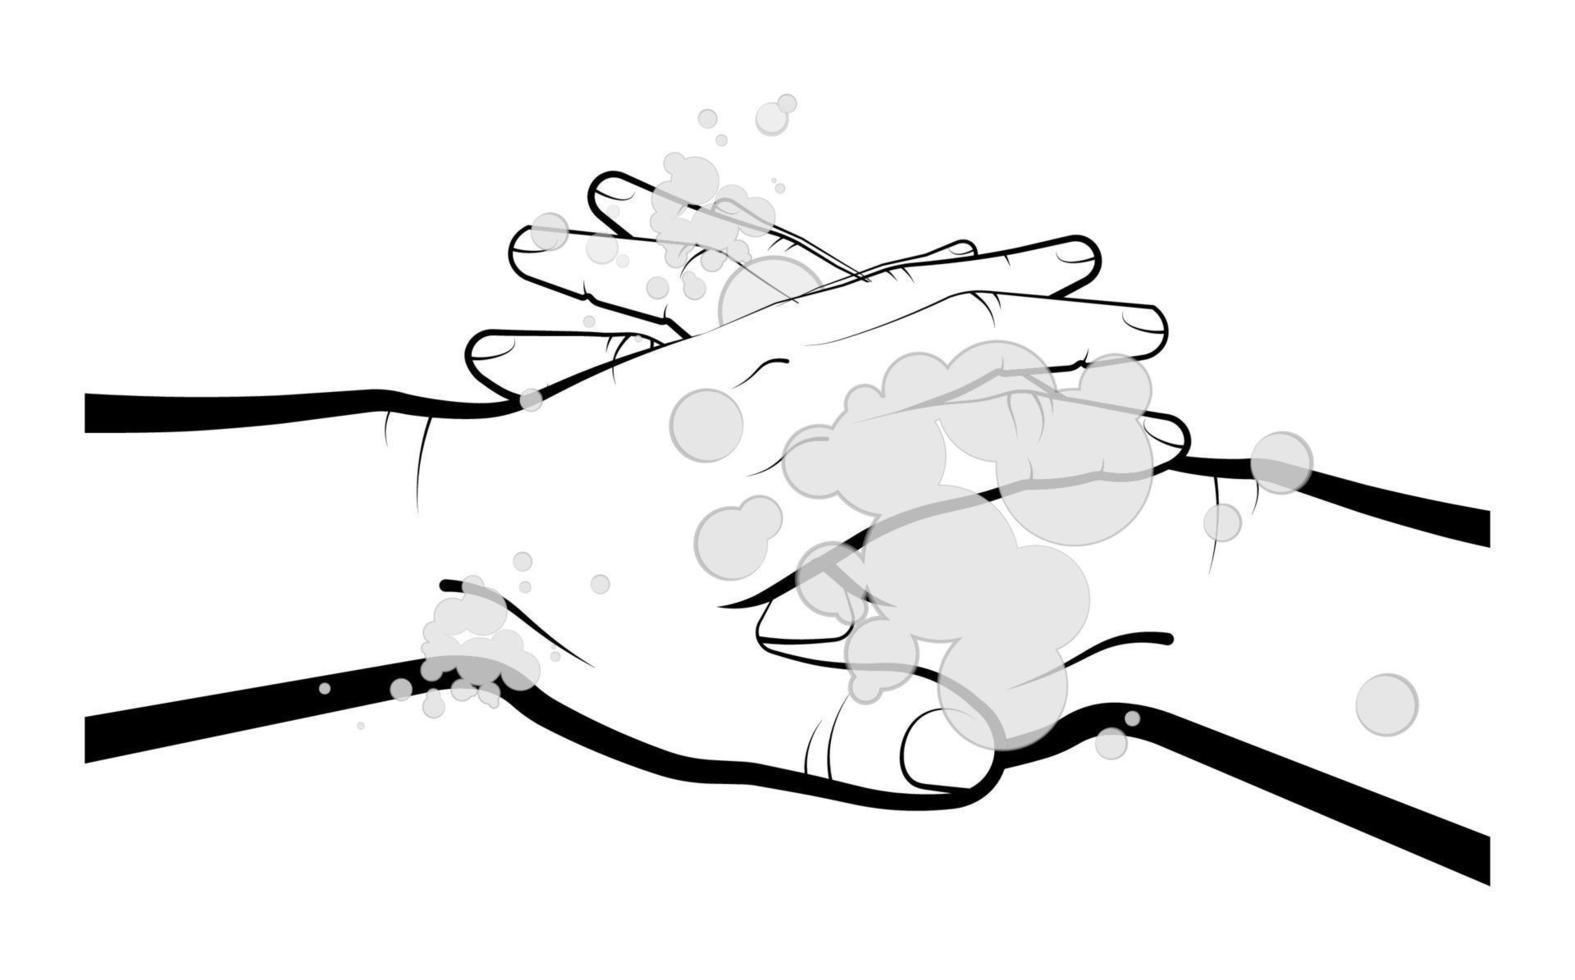 l'uomo si lava le mani sopra, i palmi con sapone colorato. rispetto dell'igiene, delle misure precauzionali durante una pandemia e nella vita di tutti i giorni. vettore isolato su sfondo bianco